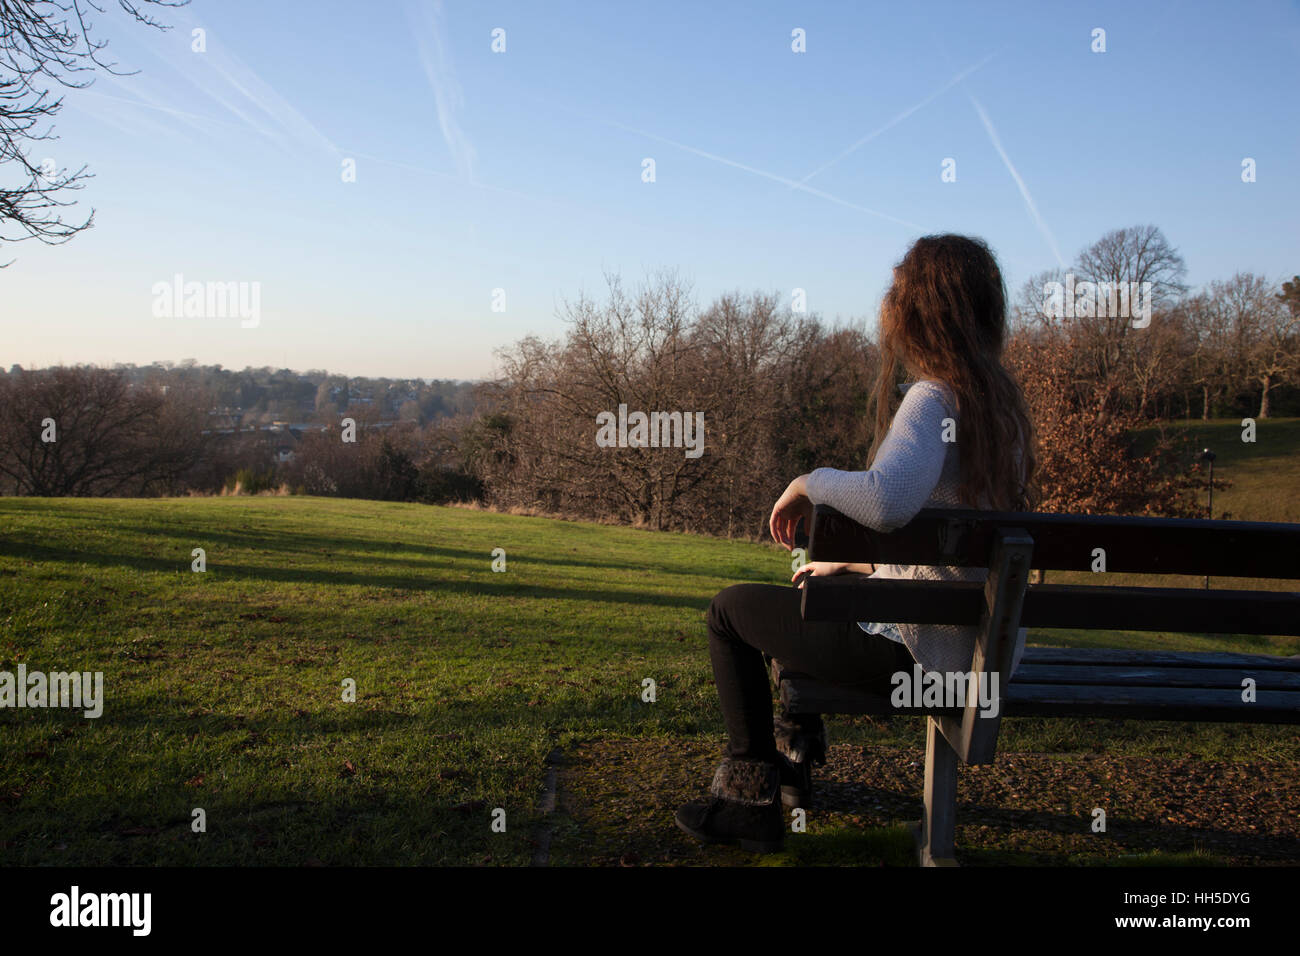 Pensieroso giovane donna seduta da sola su una panchina guardando in lontananza, in una posizione tranquilla con una luce del cielo e alberi. Foto Stock